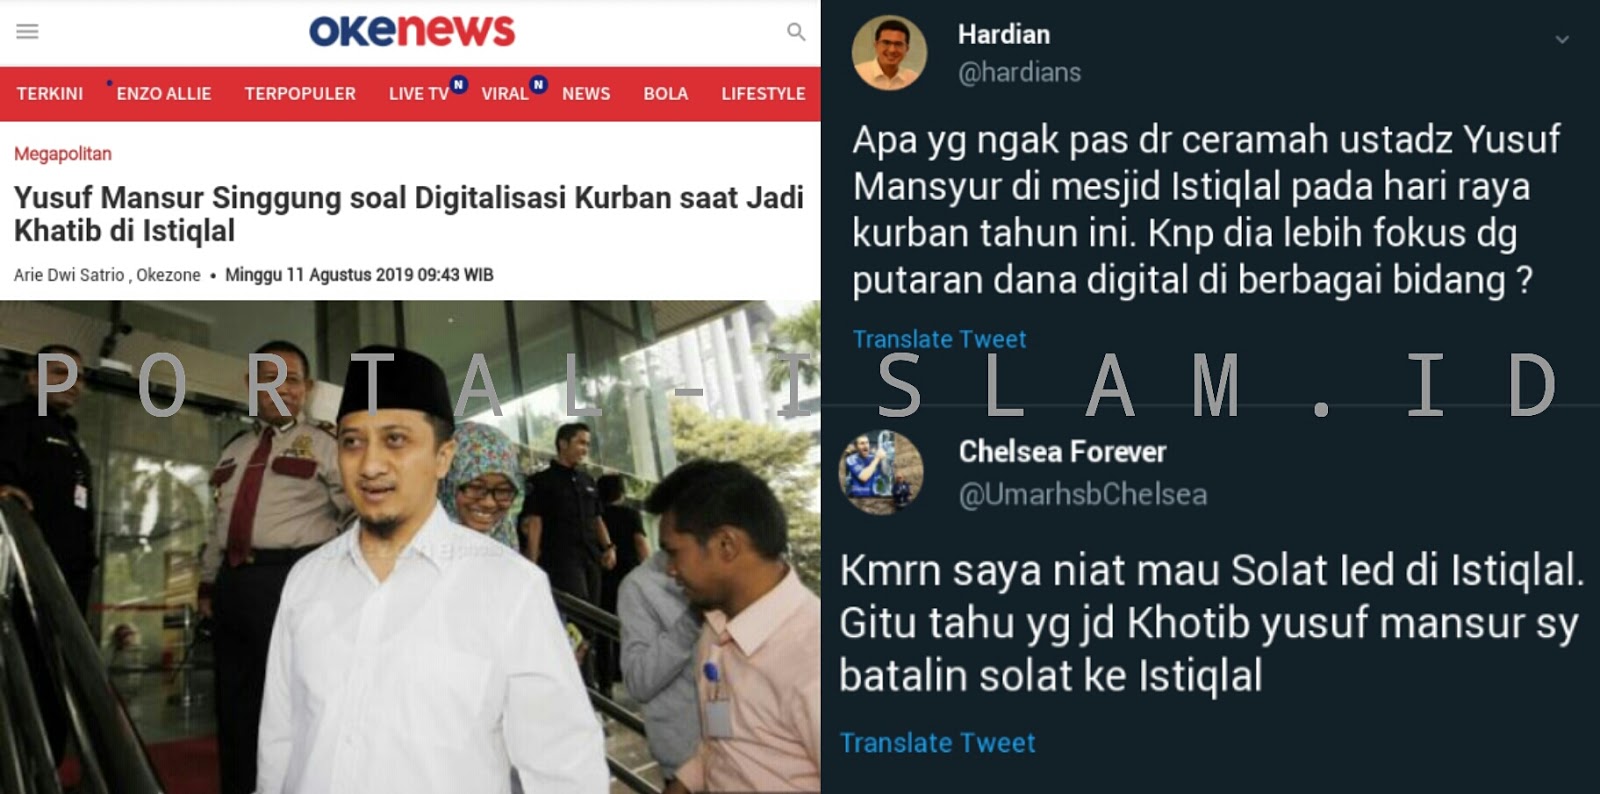 Ust Yusuf Mansur Ceramah Soal Dana Digital Di Istiqlal Warganet